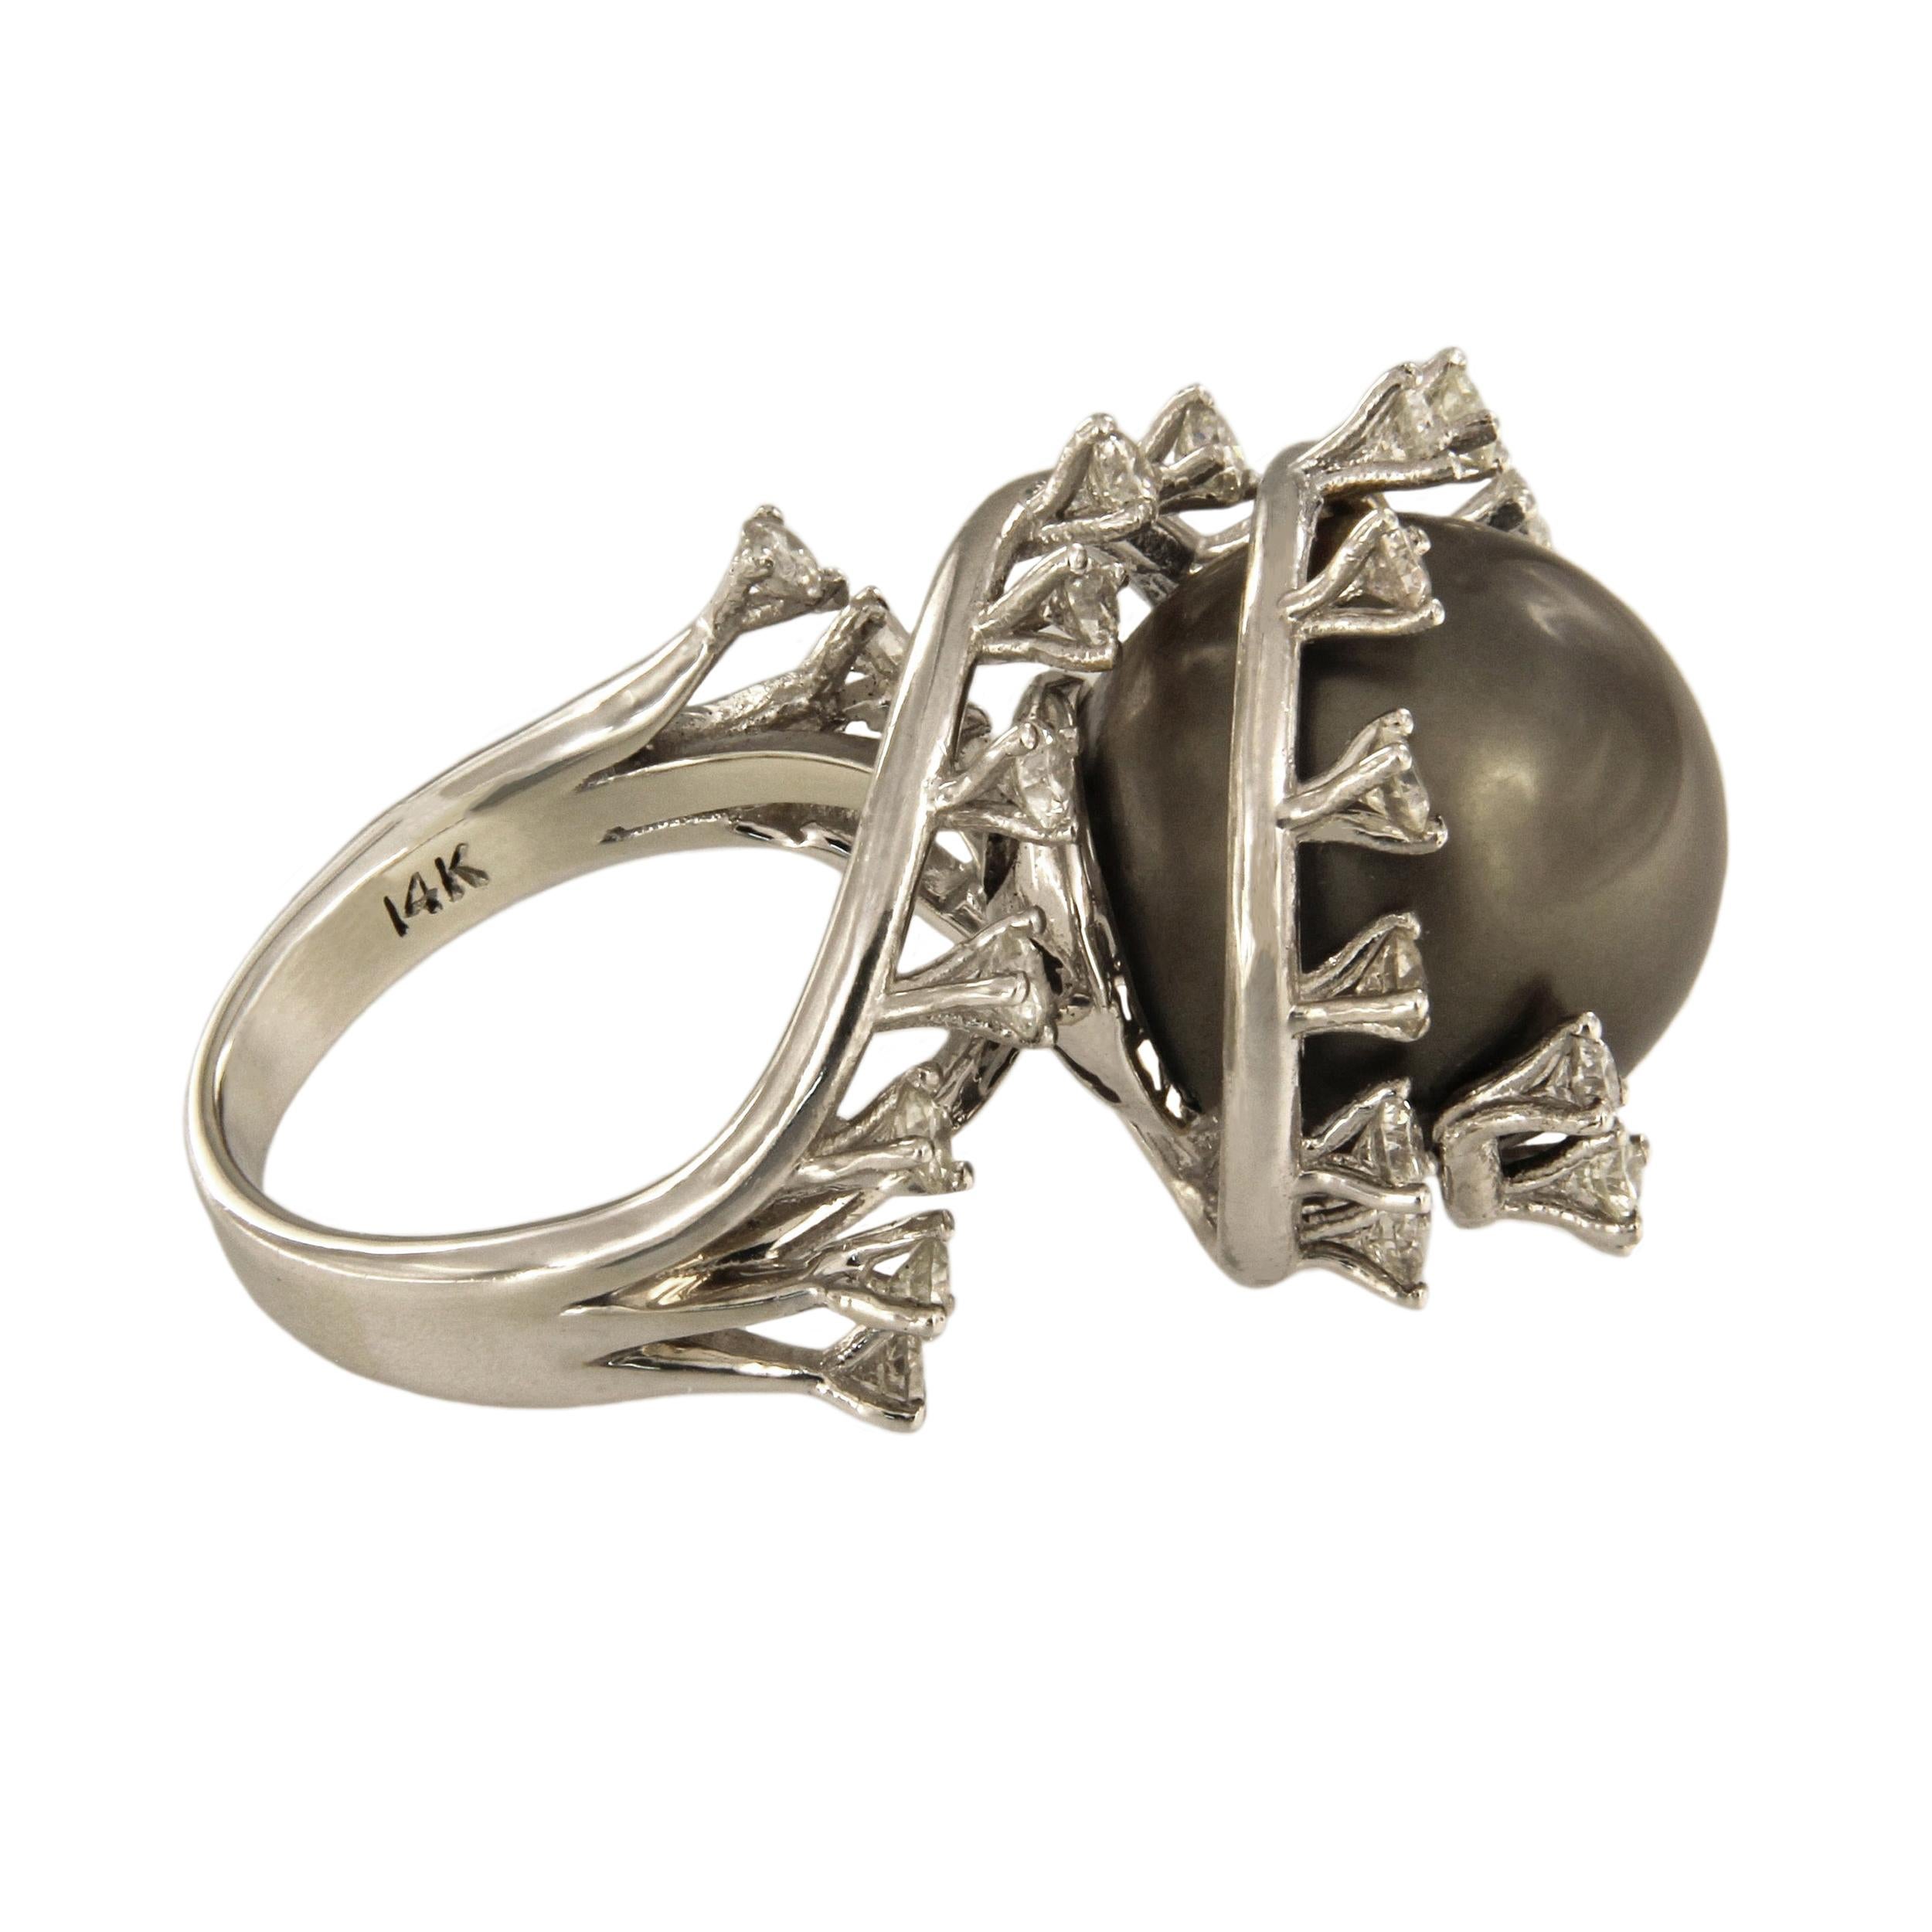 Eine atemberaubende schwarze Tahiti-Perle präsentiert ihre faszinierende Schönheit in diesem eleganten Ring.

-Sonderanfertigung
-14k Weißgold
-Ringgröße: 6
-Ring Gewicht: 11gr
-Tahiti-Perle
-Perle: 13mm
DIAMONEN:
-30 Steine, 1,5 Karat